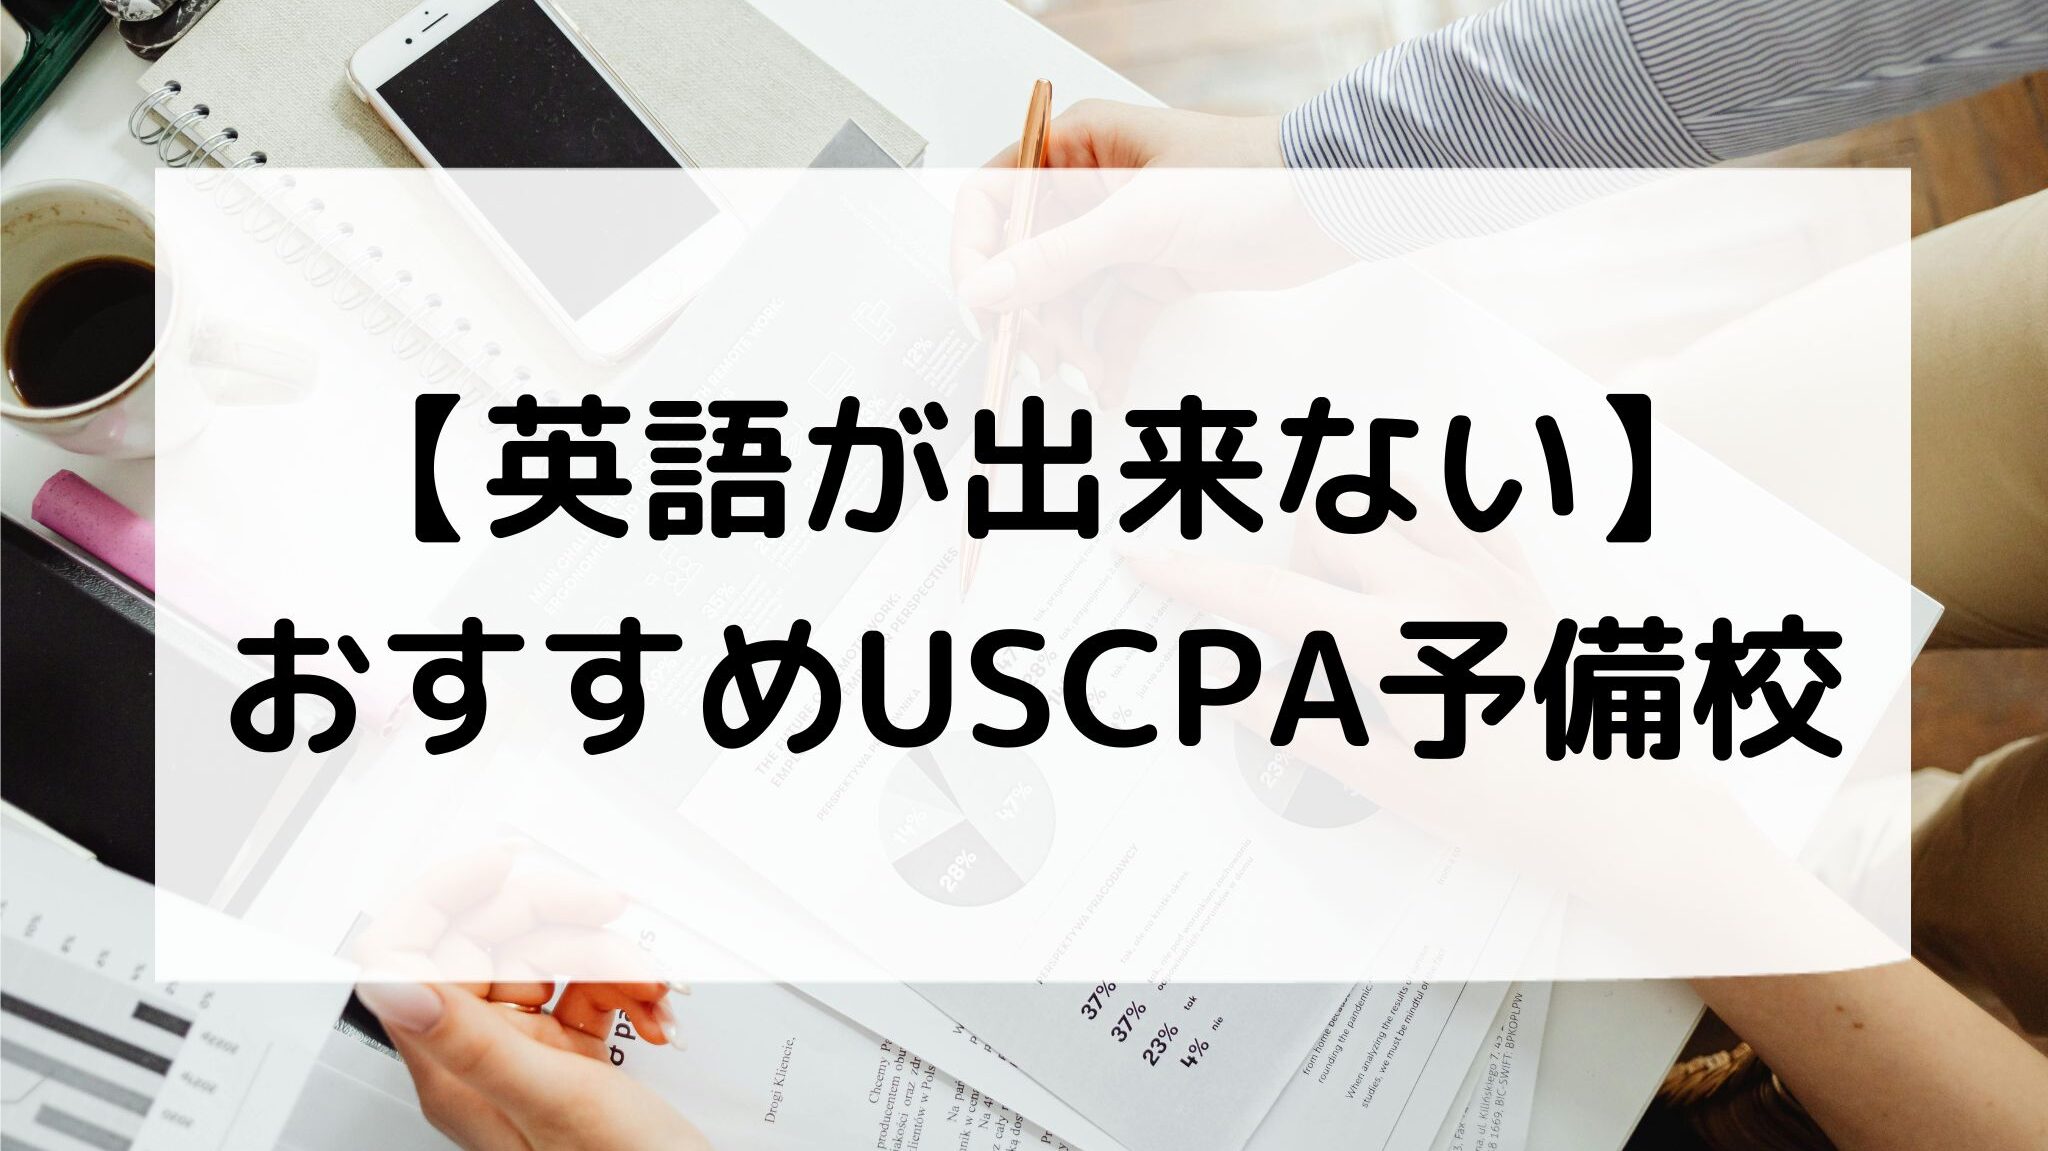 日本語対応のUSCPA予備校おすすめランキング